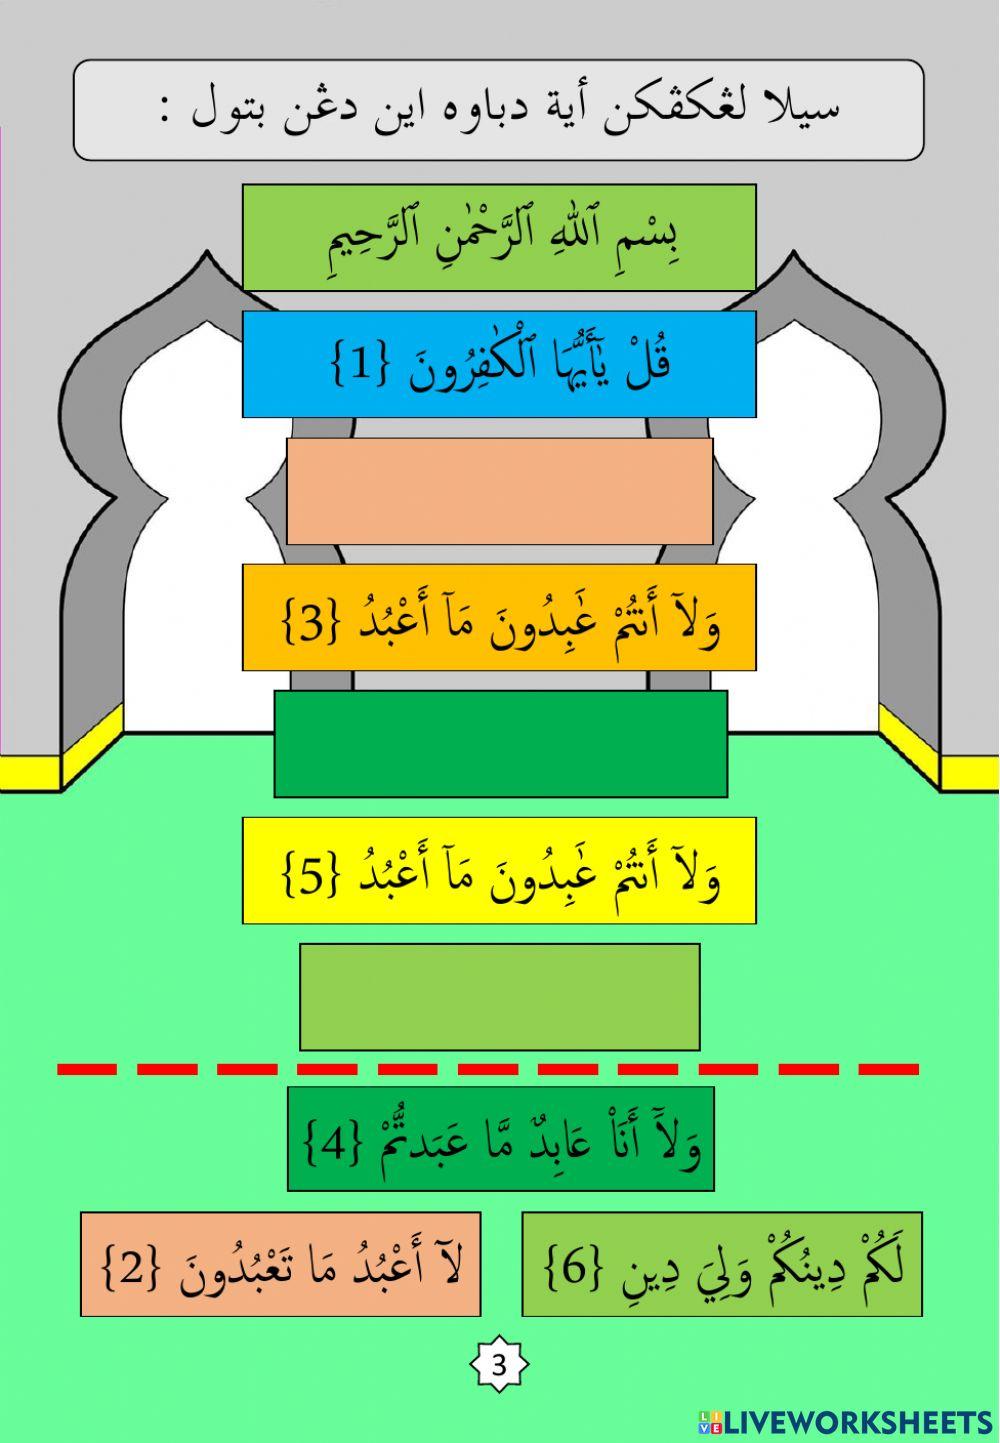 Surah : 6. Al-Kafirun